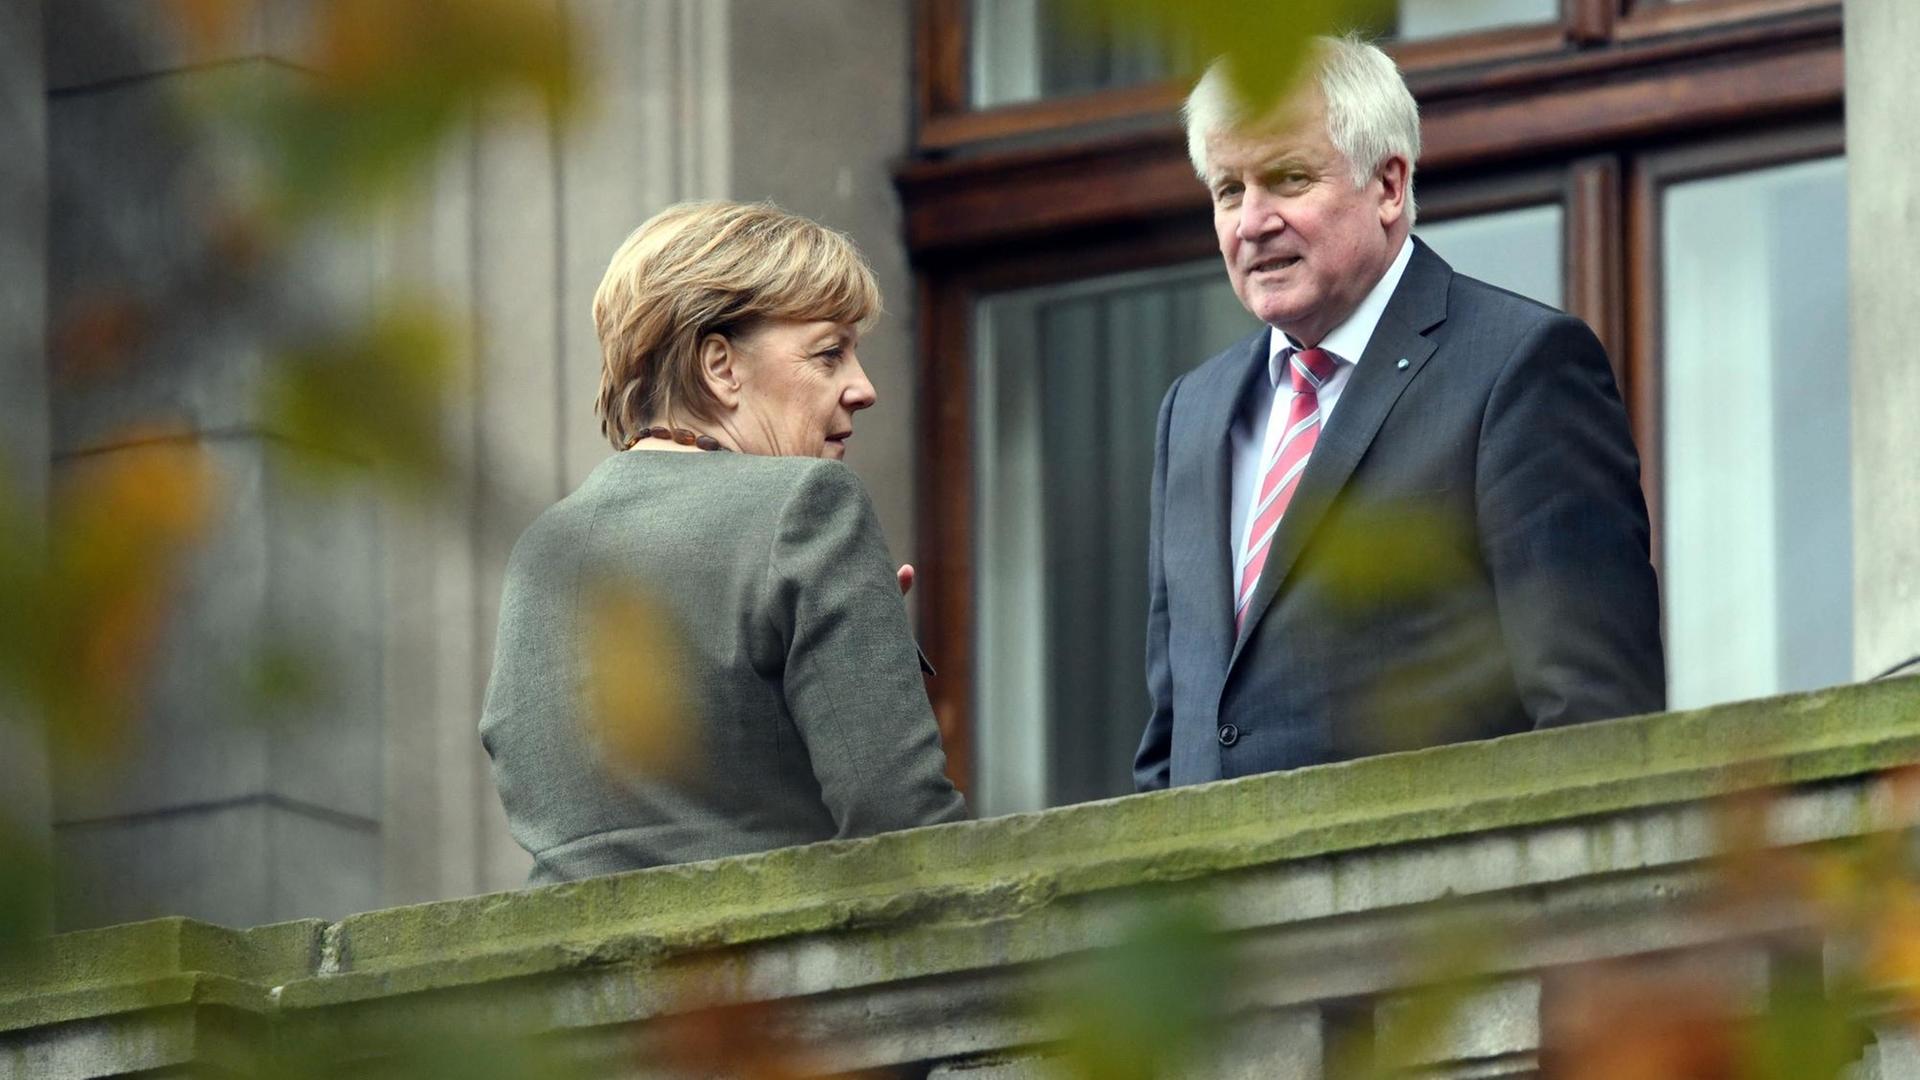 Bundeskanzlerin Angela Merkel (CDU) und Bayerns Ministerpräsident Horst Seehofer (CSU) stehen am 26.10.2017 in einer Verhandlungspause der Sondierungsverhandlungen zwischen CDU, CSU, FDP und Grünen auf dem Balkon der Parlamentarischen Gesellschaft.